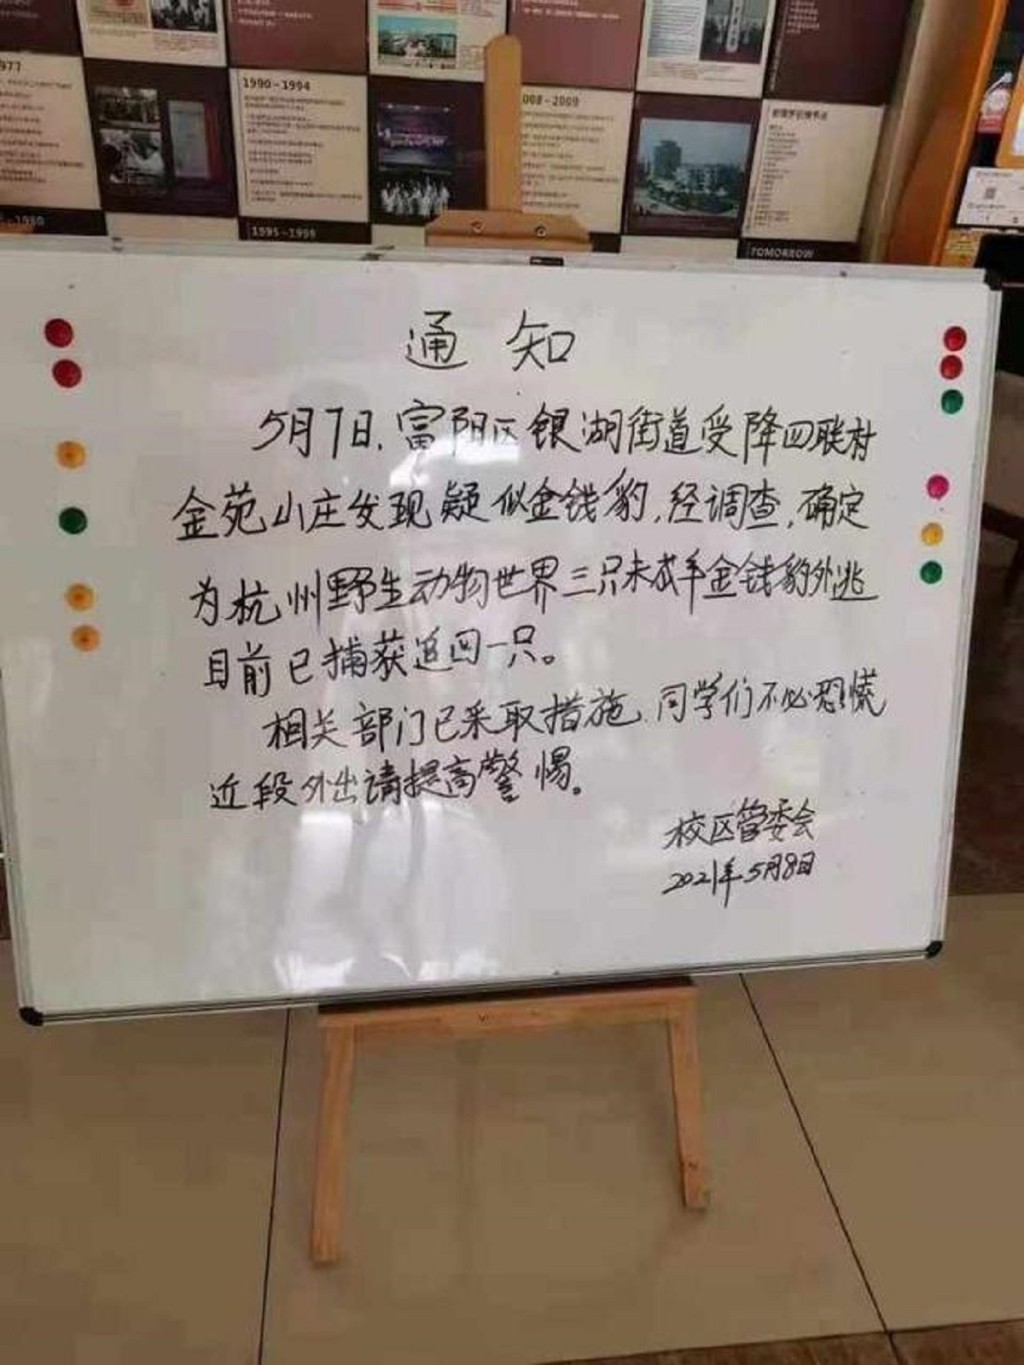 在距離杭州野生動物園13公里外，浙江中醫藥大學富春校區已經發布了安全提醒。網上圖片